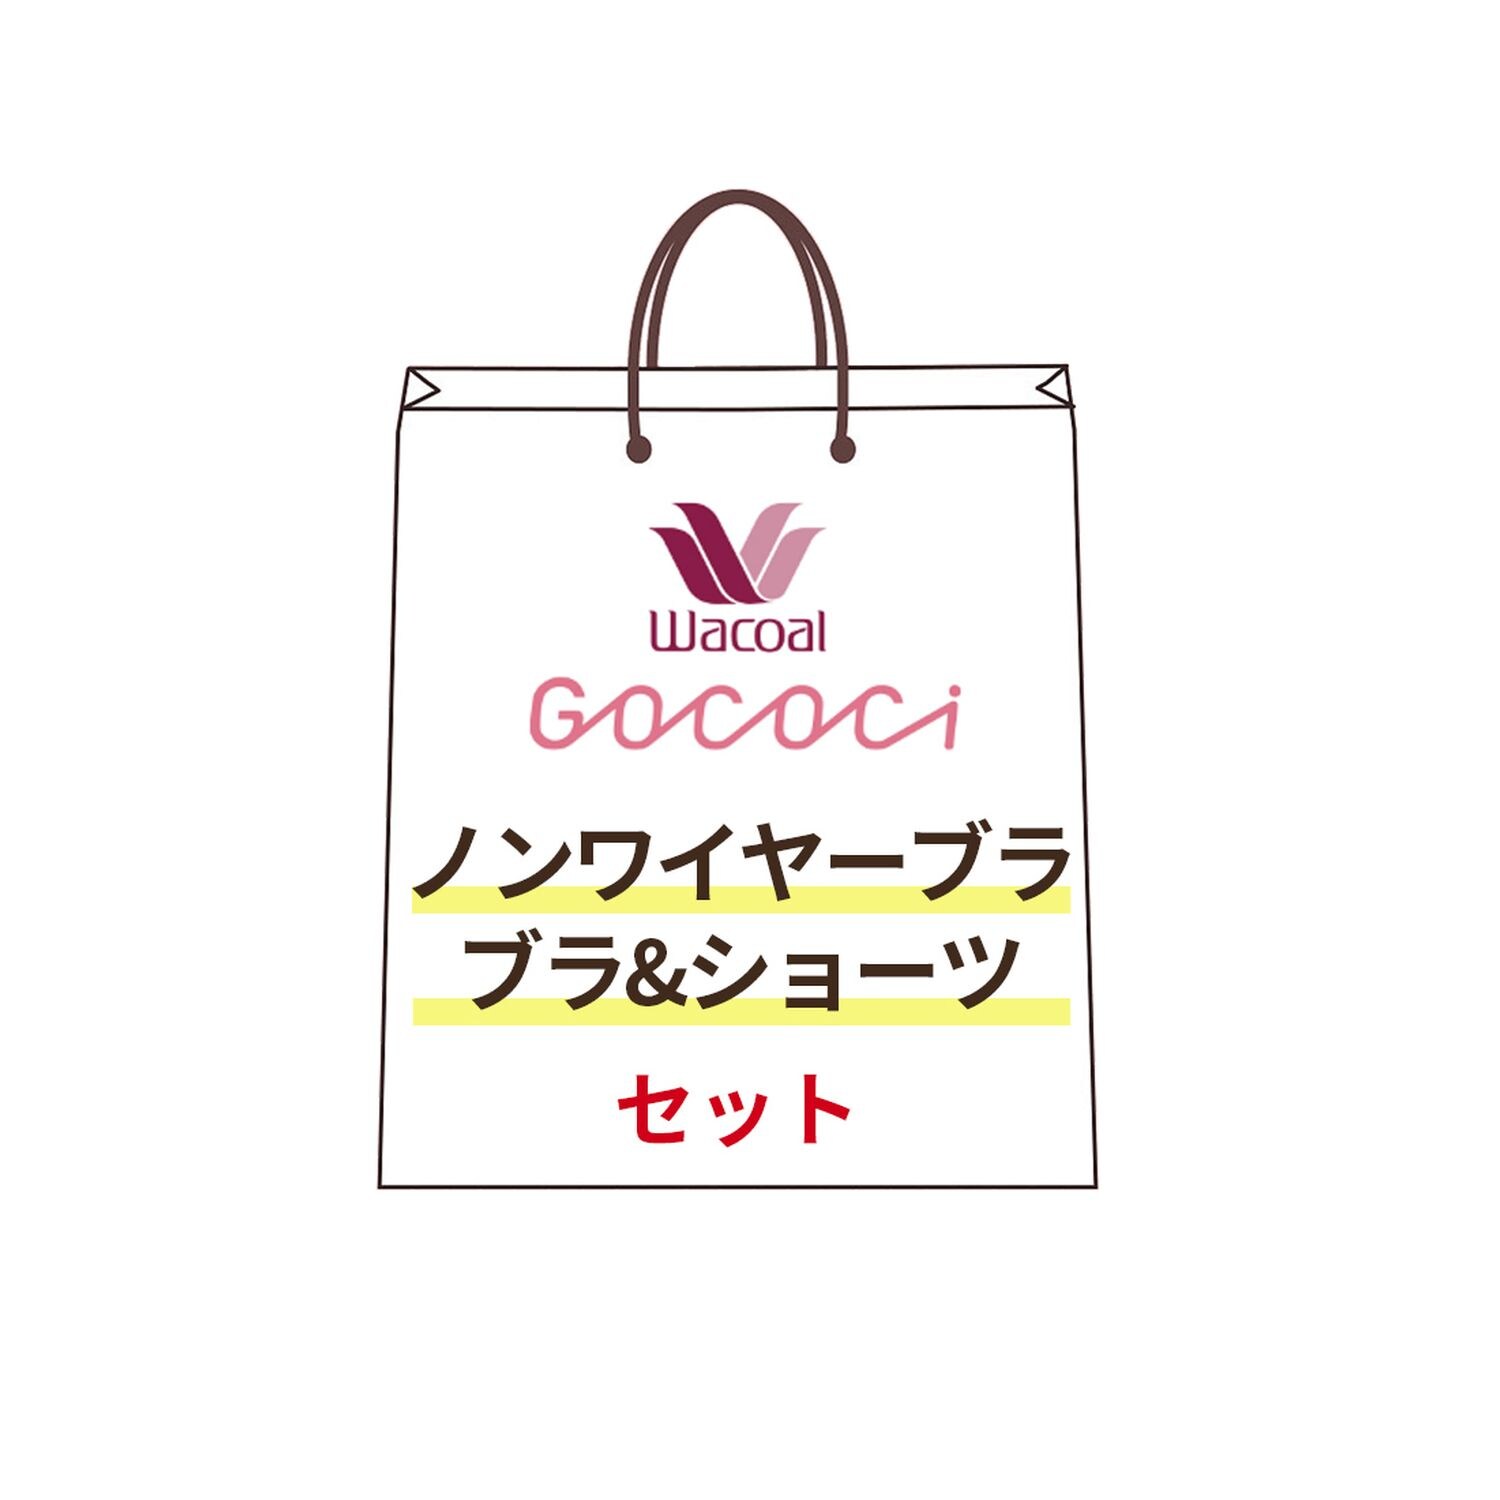 【ワコール/Wacoal】GOCOCi(ゴコチ)ブラ & ショーツセット